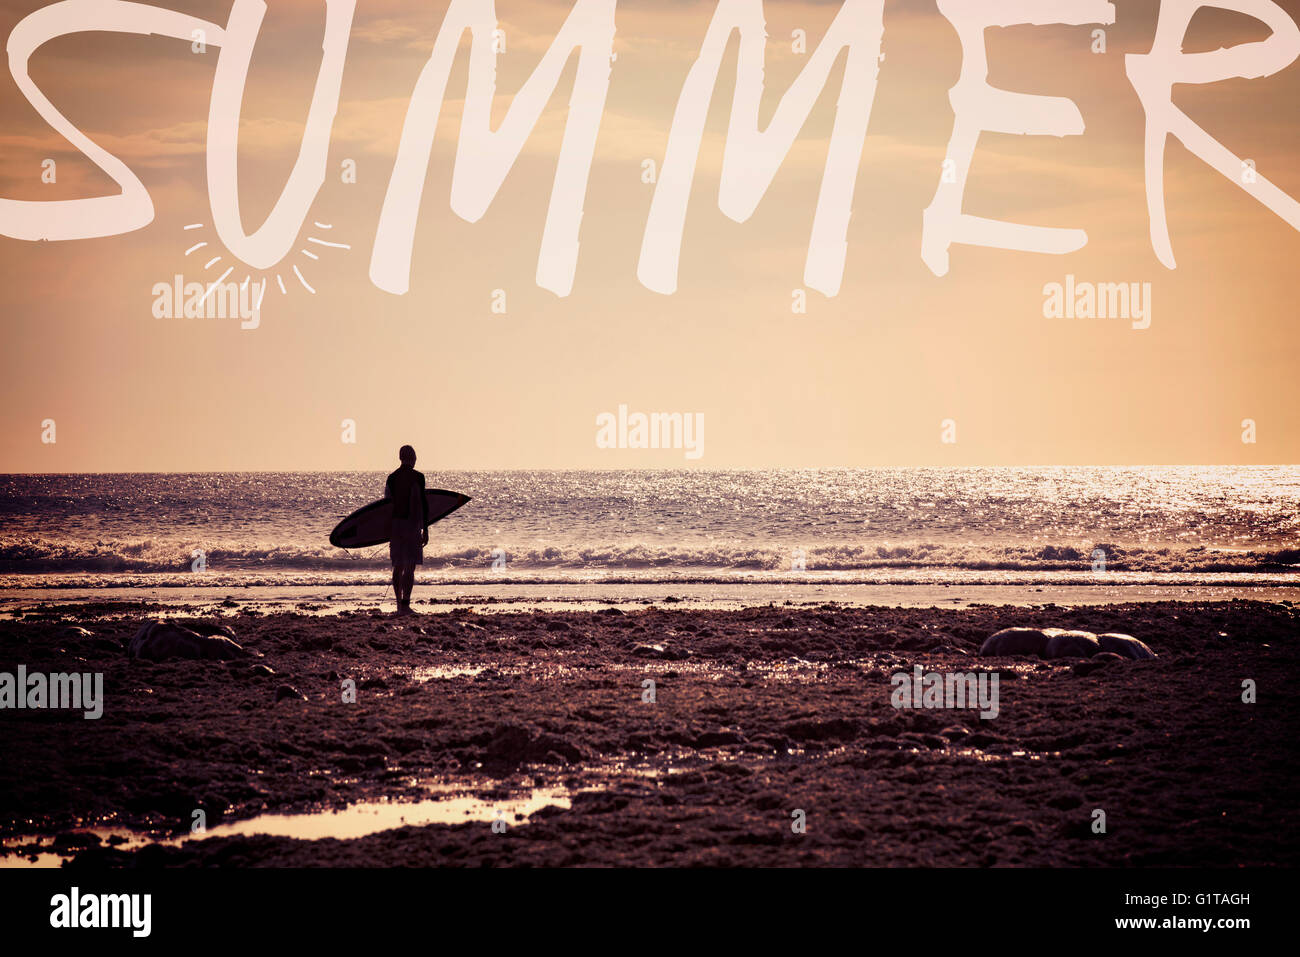 Surfer-Mann-Silhouette in Strand Landschaft mit Vintage-Filter. Genießen Sie Sommer-Konzept für Surf-Grußkarte Stockfoto